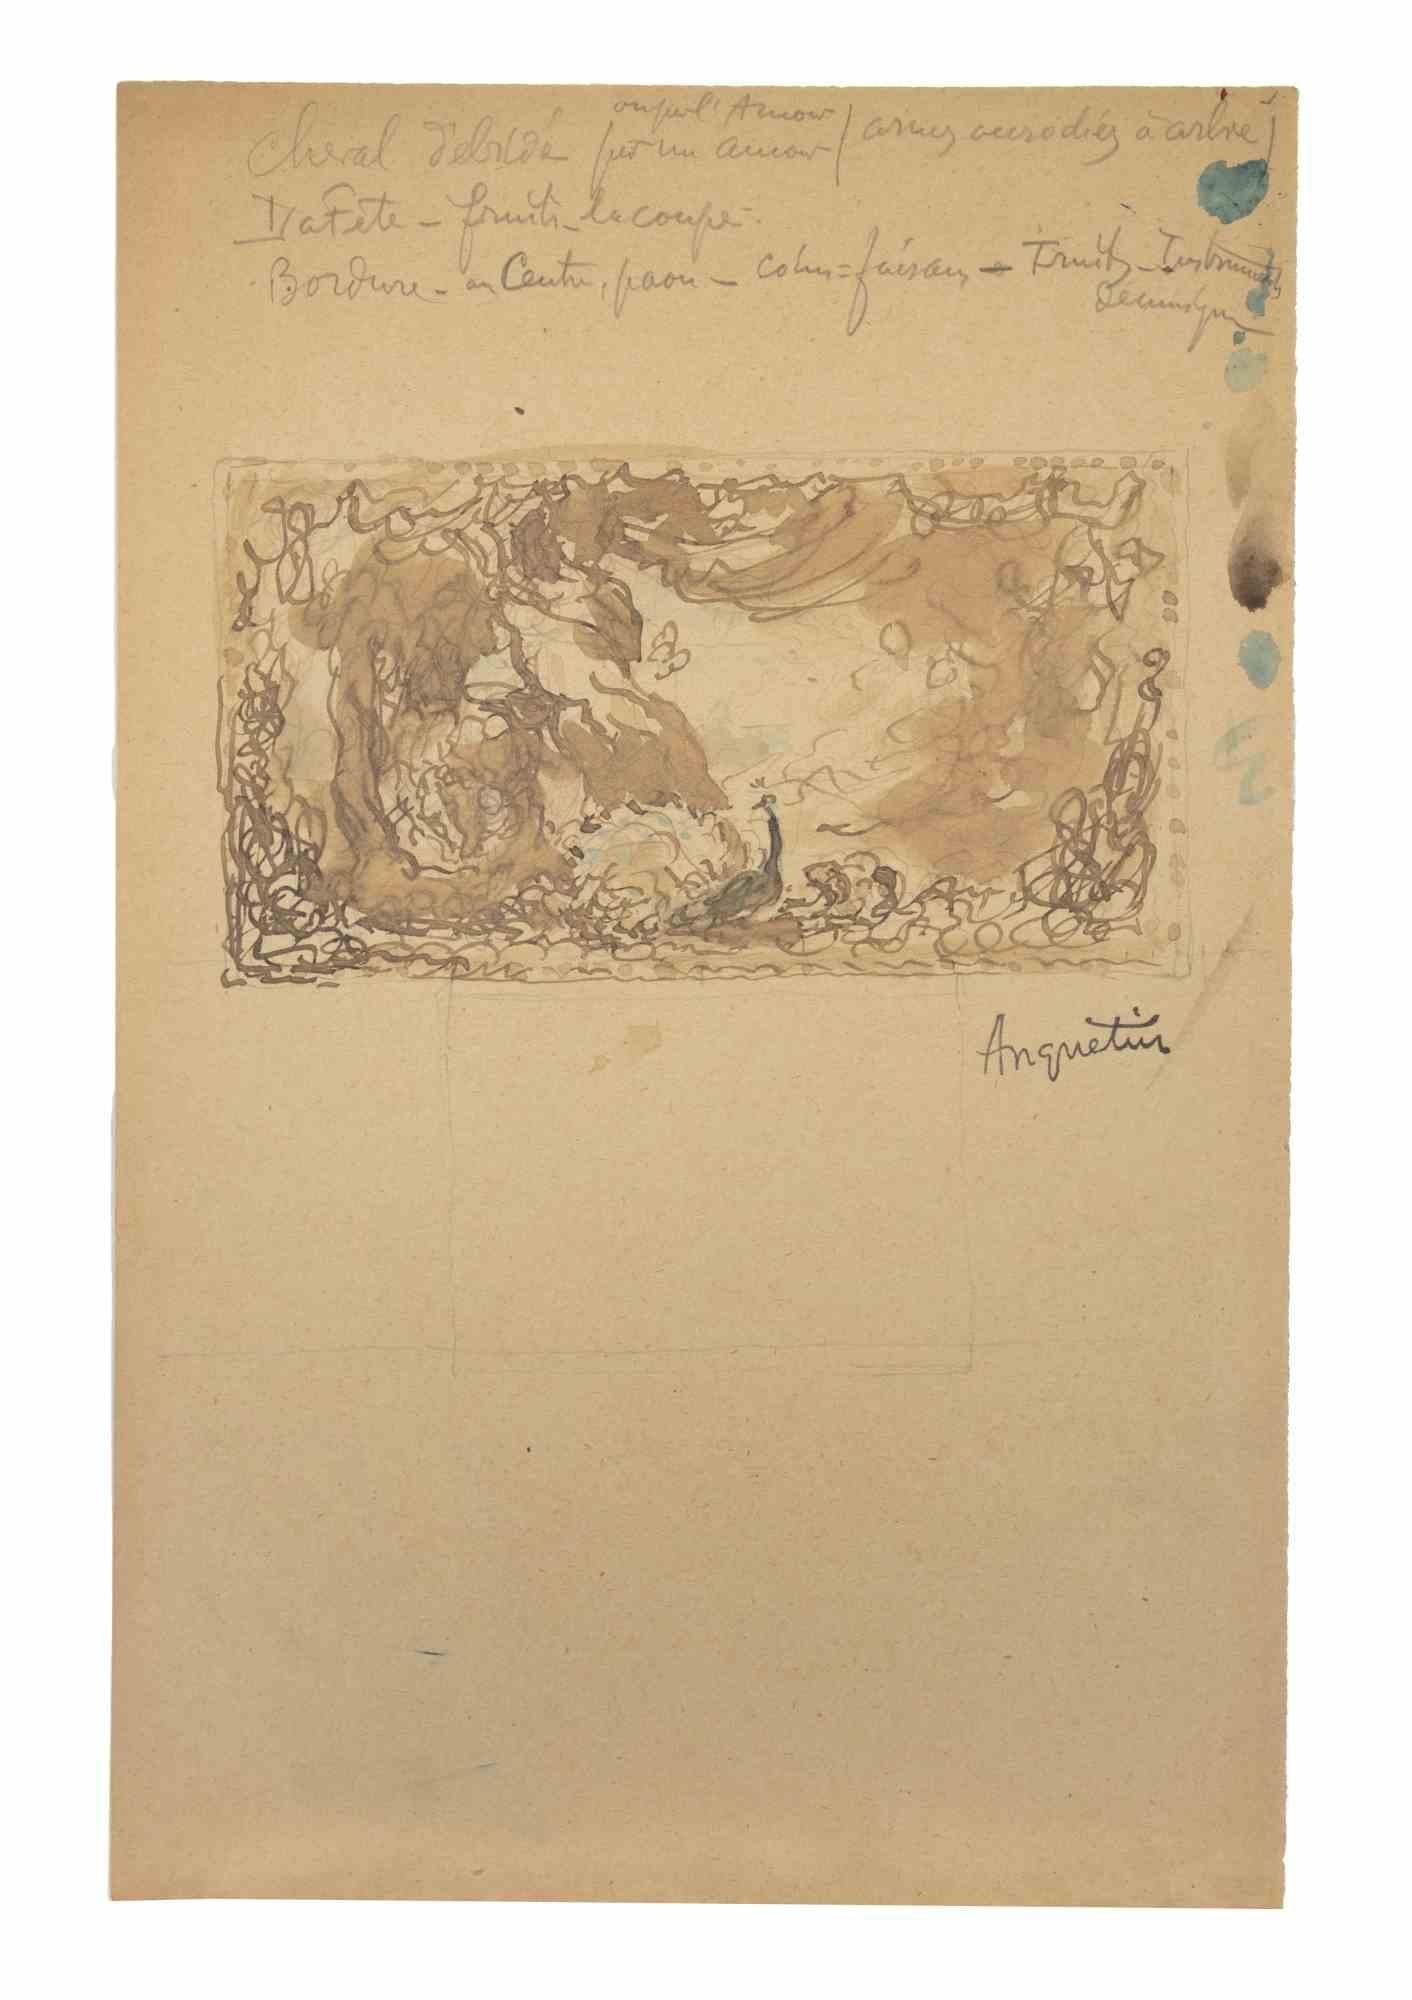 Der Vogel e ist eine Tuschezeichnung auf Papier aus dem frühen 20. Jahrhundert von Louis Anquetin (1861-1932).

Handsigniert auf der Unterseite.

Guter Zustand mit leichten Stockflecken.

Louis Émile Anquetin (26. Januar 1861 - 19. August 1932) war